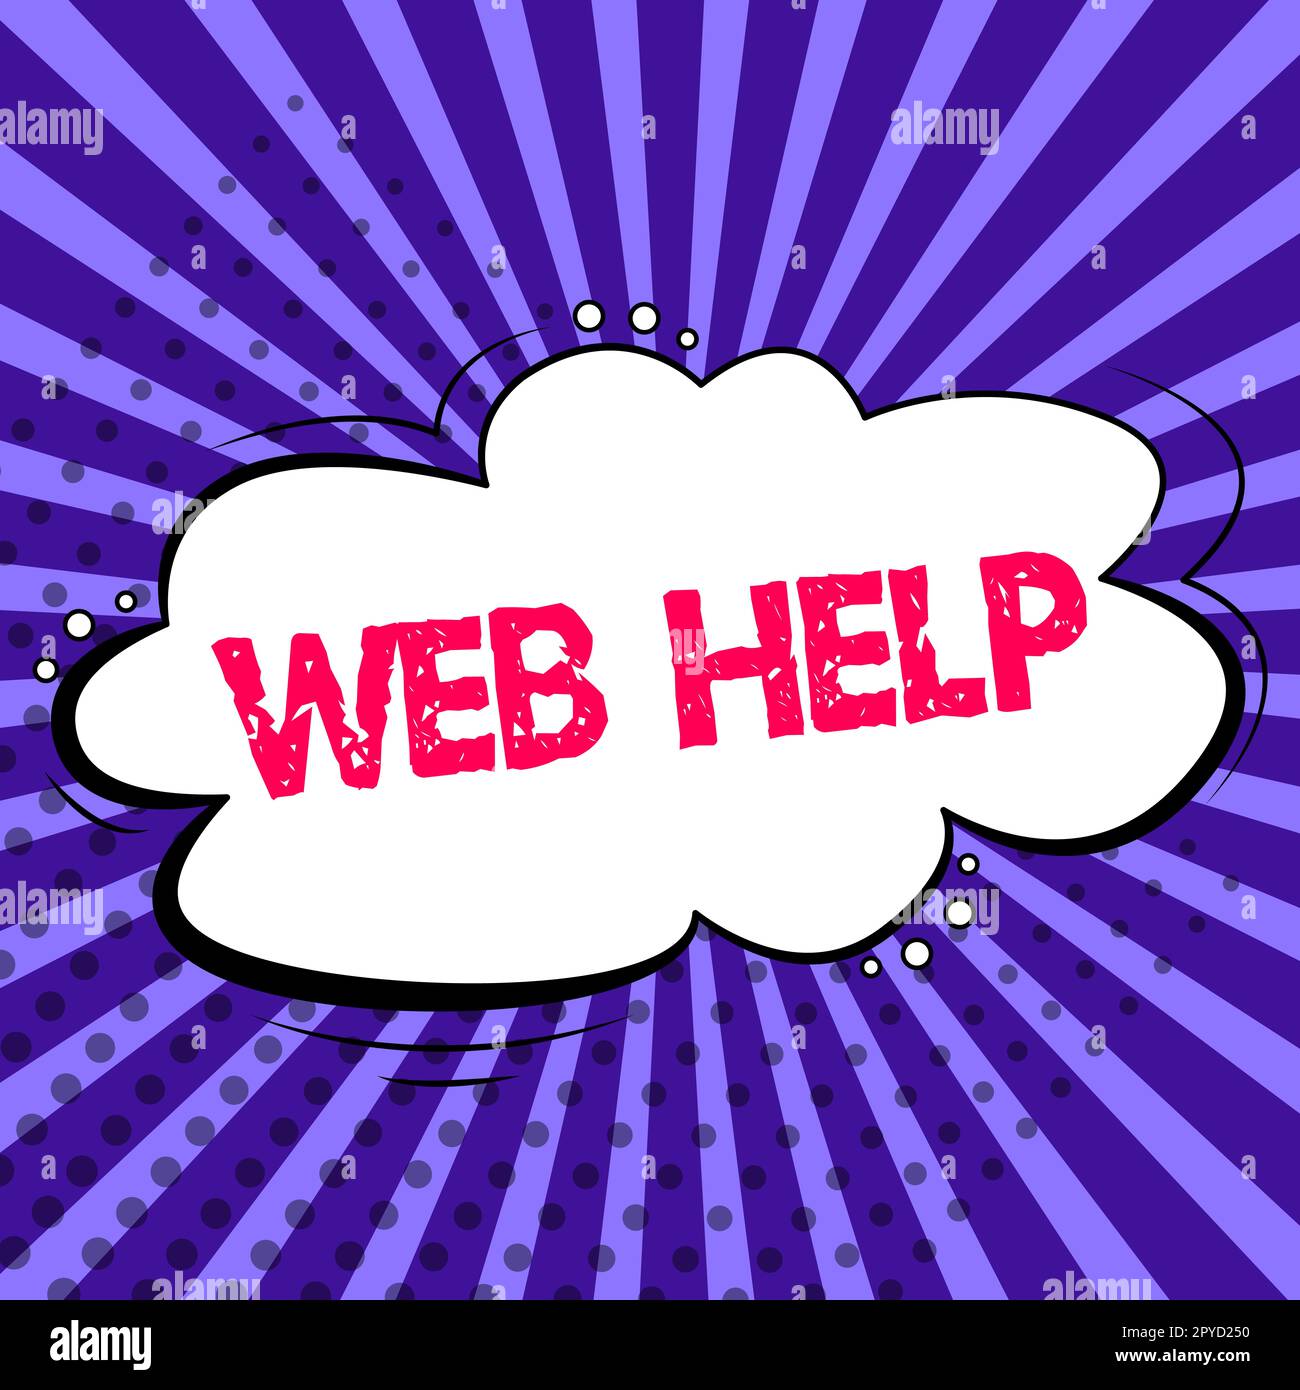 Web-Hilfe für handschriftlichen Text. Geschäftsüberblick Verfahrens- oder Referenzinformationen, die über den Computer bereitgestellt werden Stockfoto